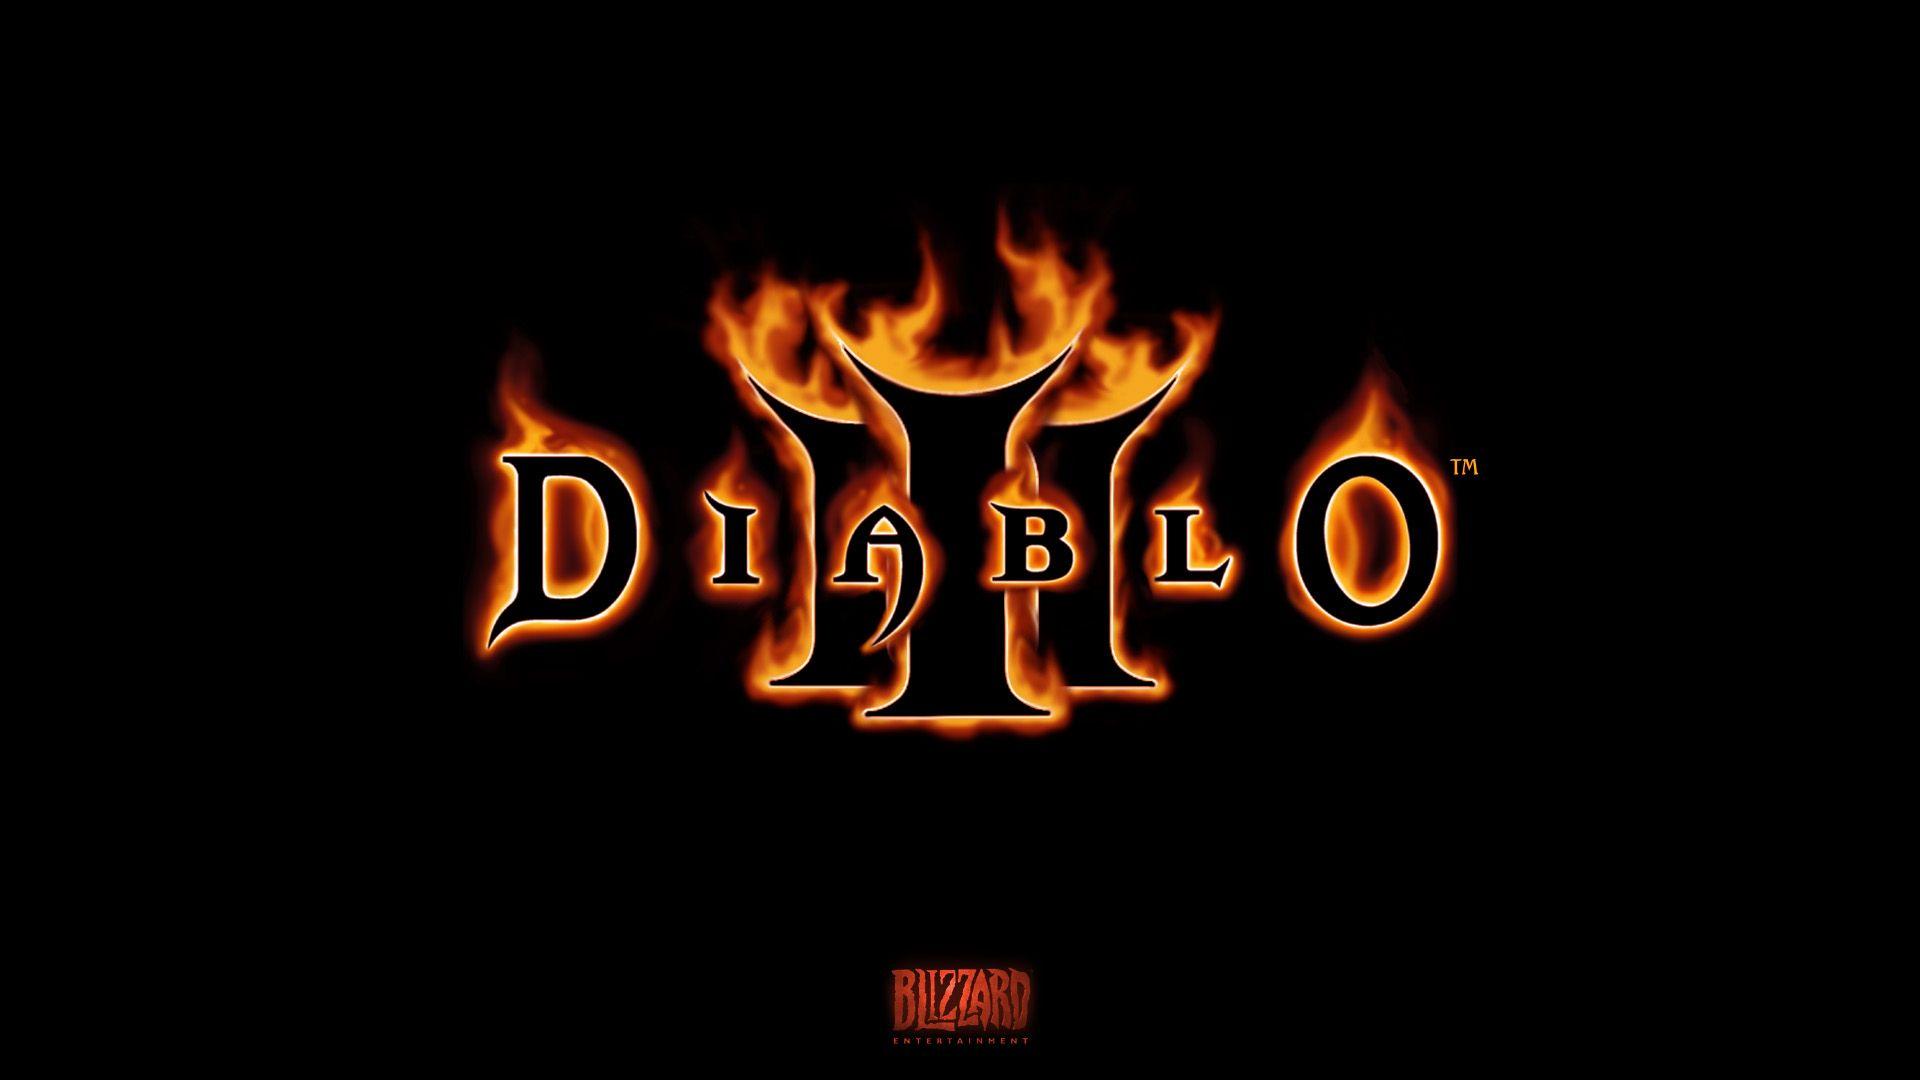 Diablo 3 Wallpaper HD. picttop